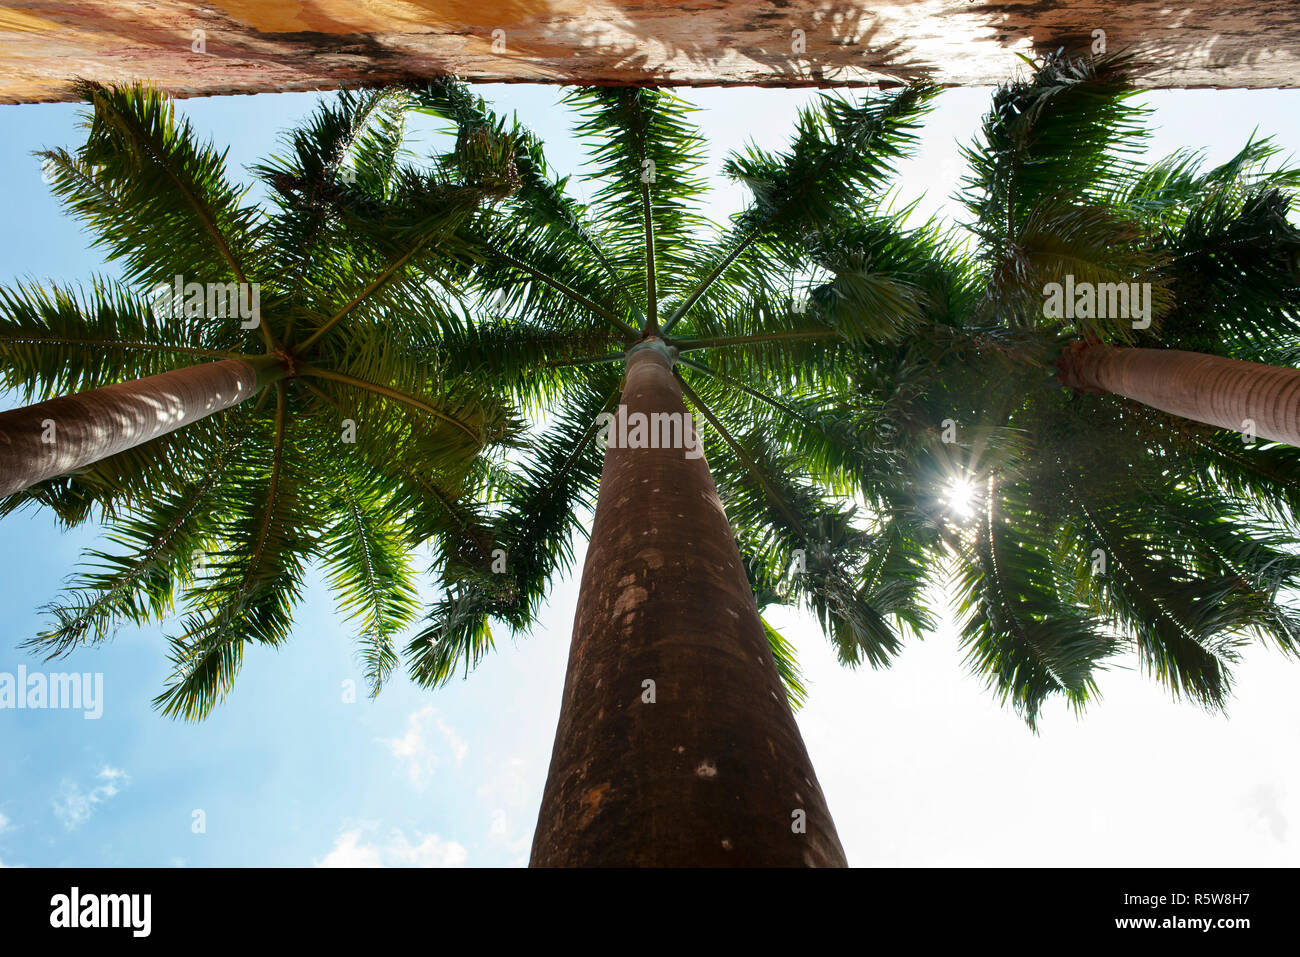 Árboles de palma real desde abajo el ángulo. Detalles tropical en el casco antiguo de la ciudad de Cartagena de Indias, Colombia. Oct 2018 Foto de stock